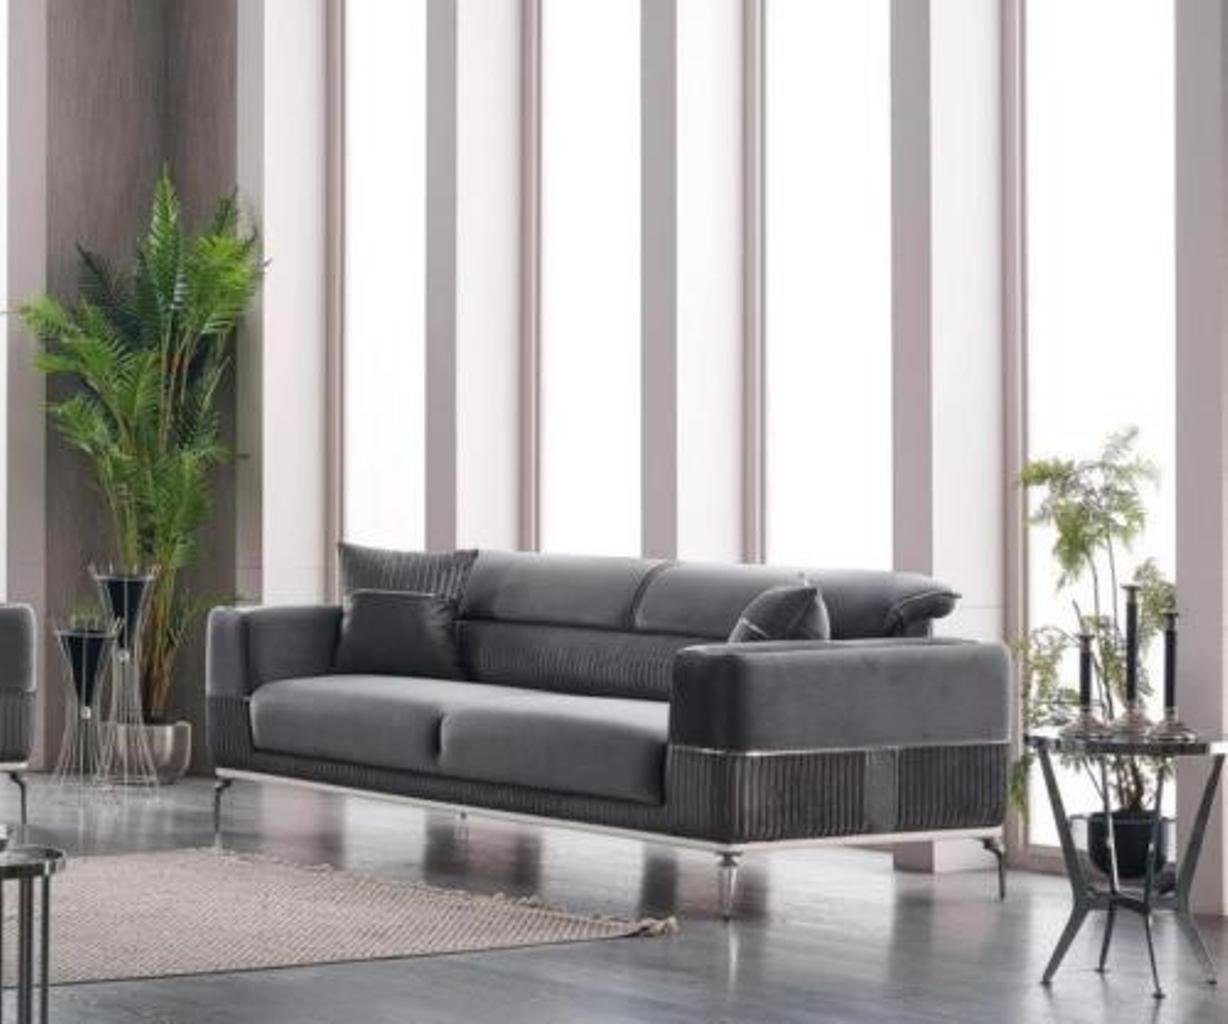 JVmoebel 3-Sitzer Grau Made Samt, Sitz Textil Couch Dreisitzer Grau Sofa 3 Polster Möbel Teile, in 1 Europa